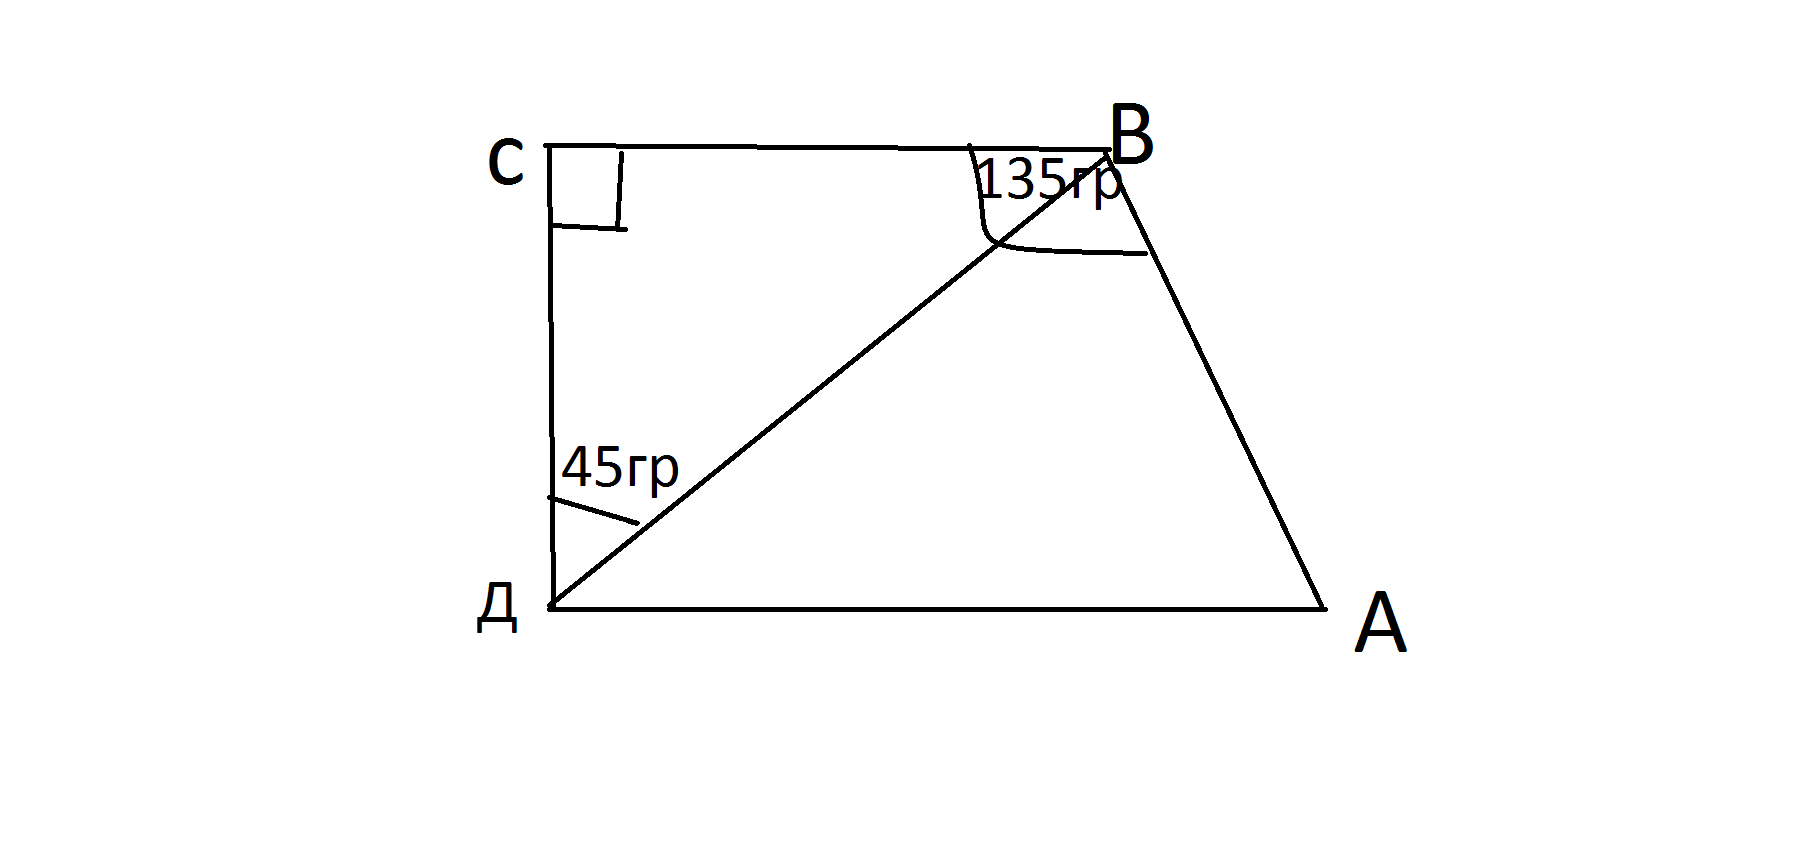 Ад параллельна сд трапеция. АВСД трапеция прямоугольная угол 135 градусов. Трапеция прямоугольная угол б 135 градусов угол д 45 ад30. ABCD прямоугольная трапеция угол b 135 ad 30. Прямоугольная трапеция ABCD.